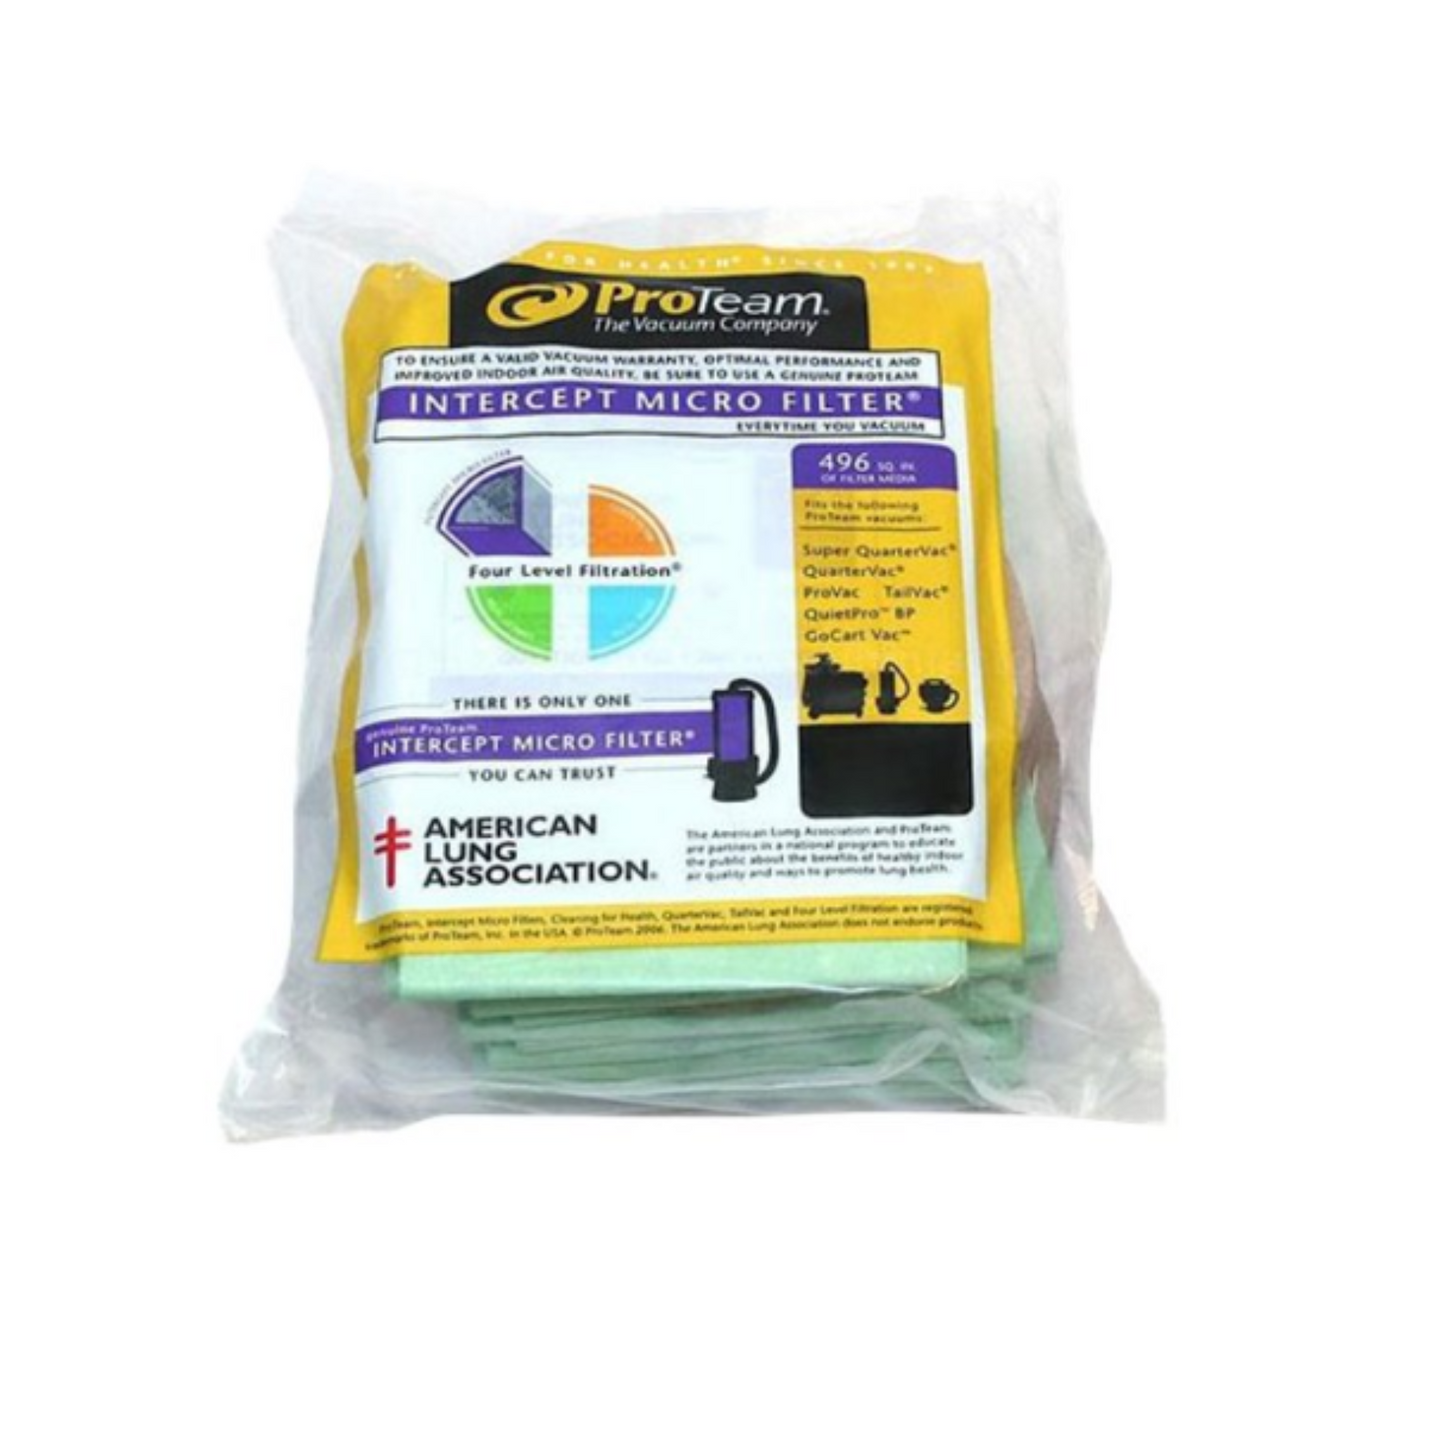 6QT ProTeam Original Microfilter 10/Pack